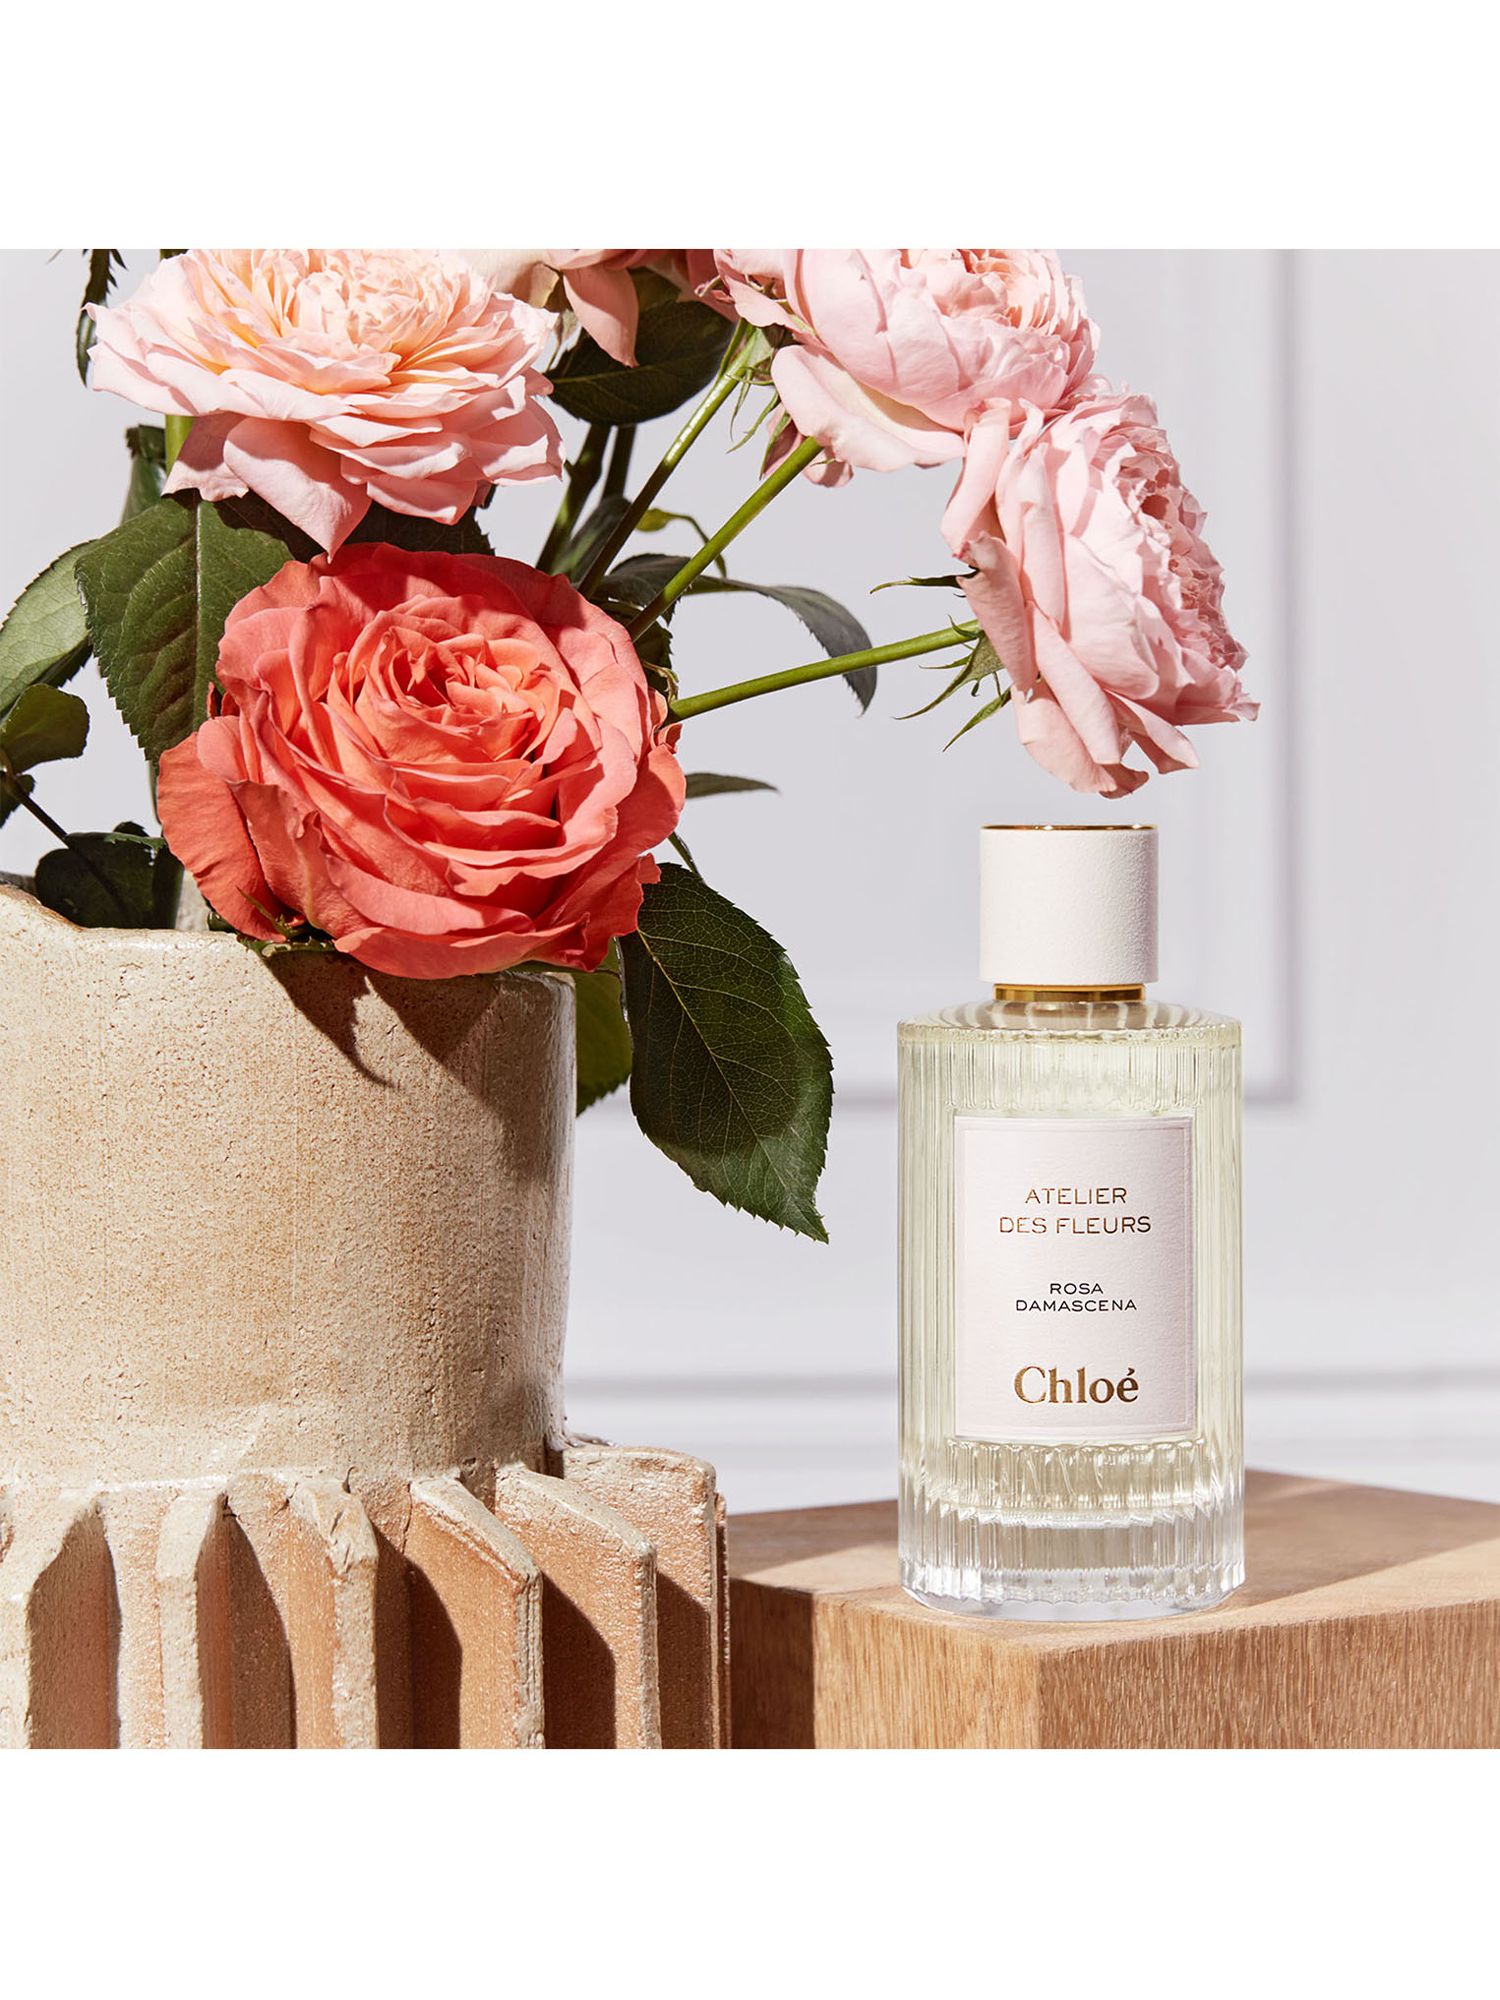 Chloé Atelier des Fleurs Rosa Damascena Eau de Parfum, 50ml 3